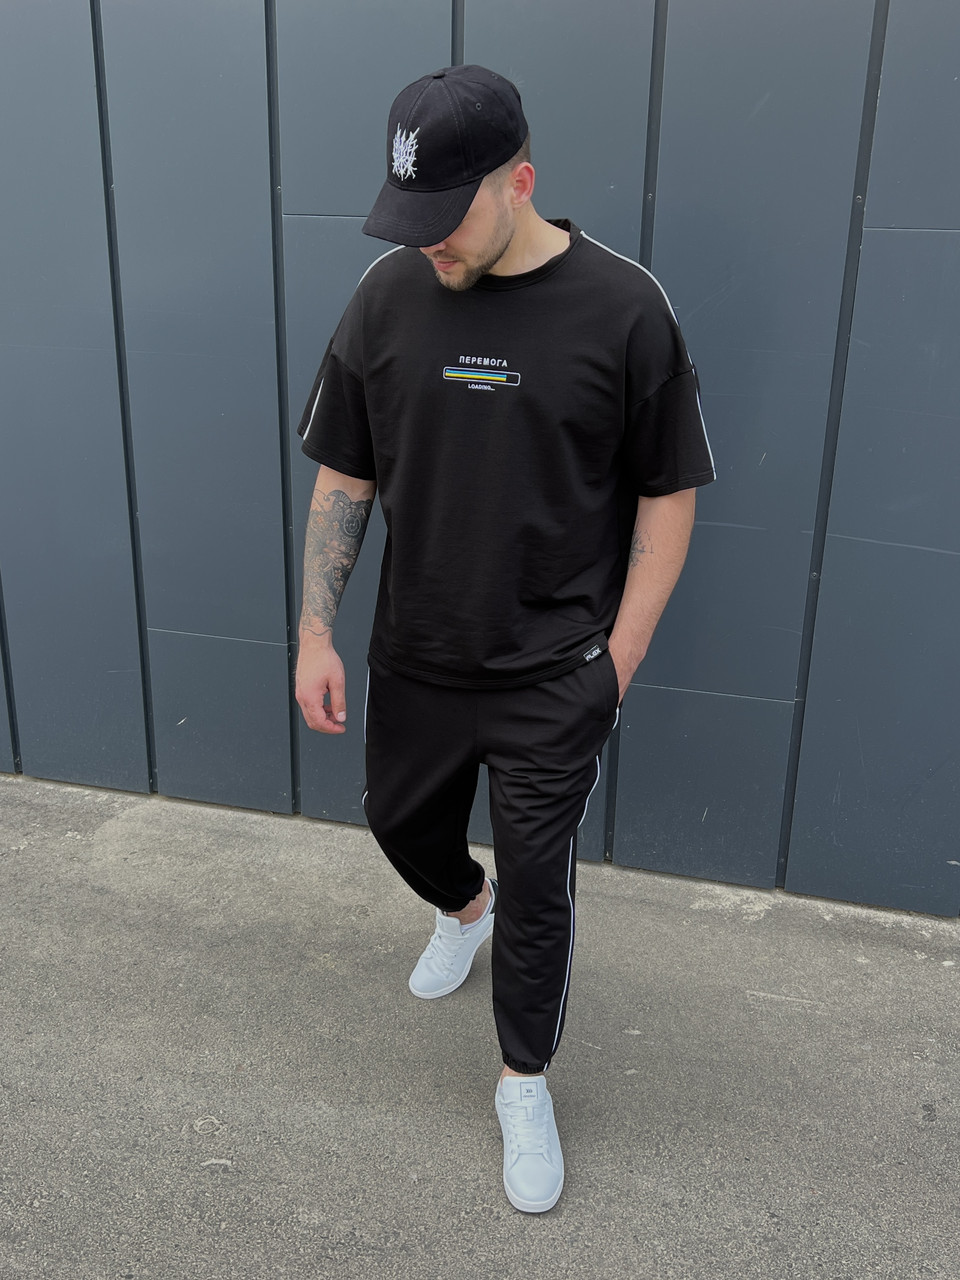 Летний комплект футболка и штаны мужские черный модель Перемога TURWEAR - Фото 4